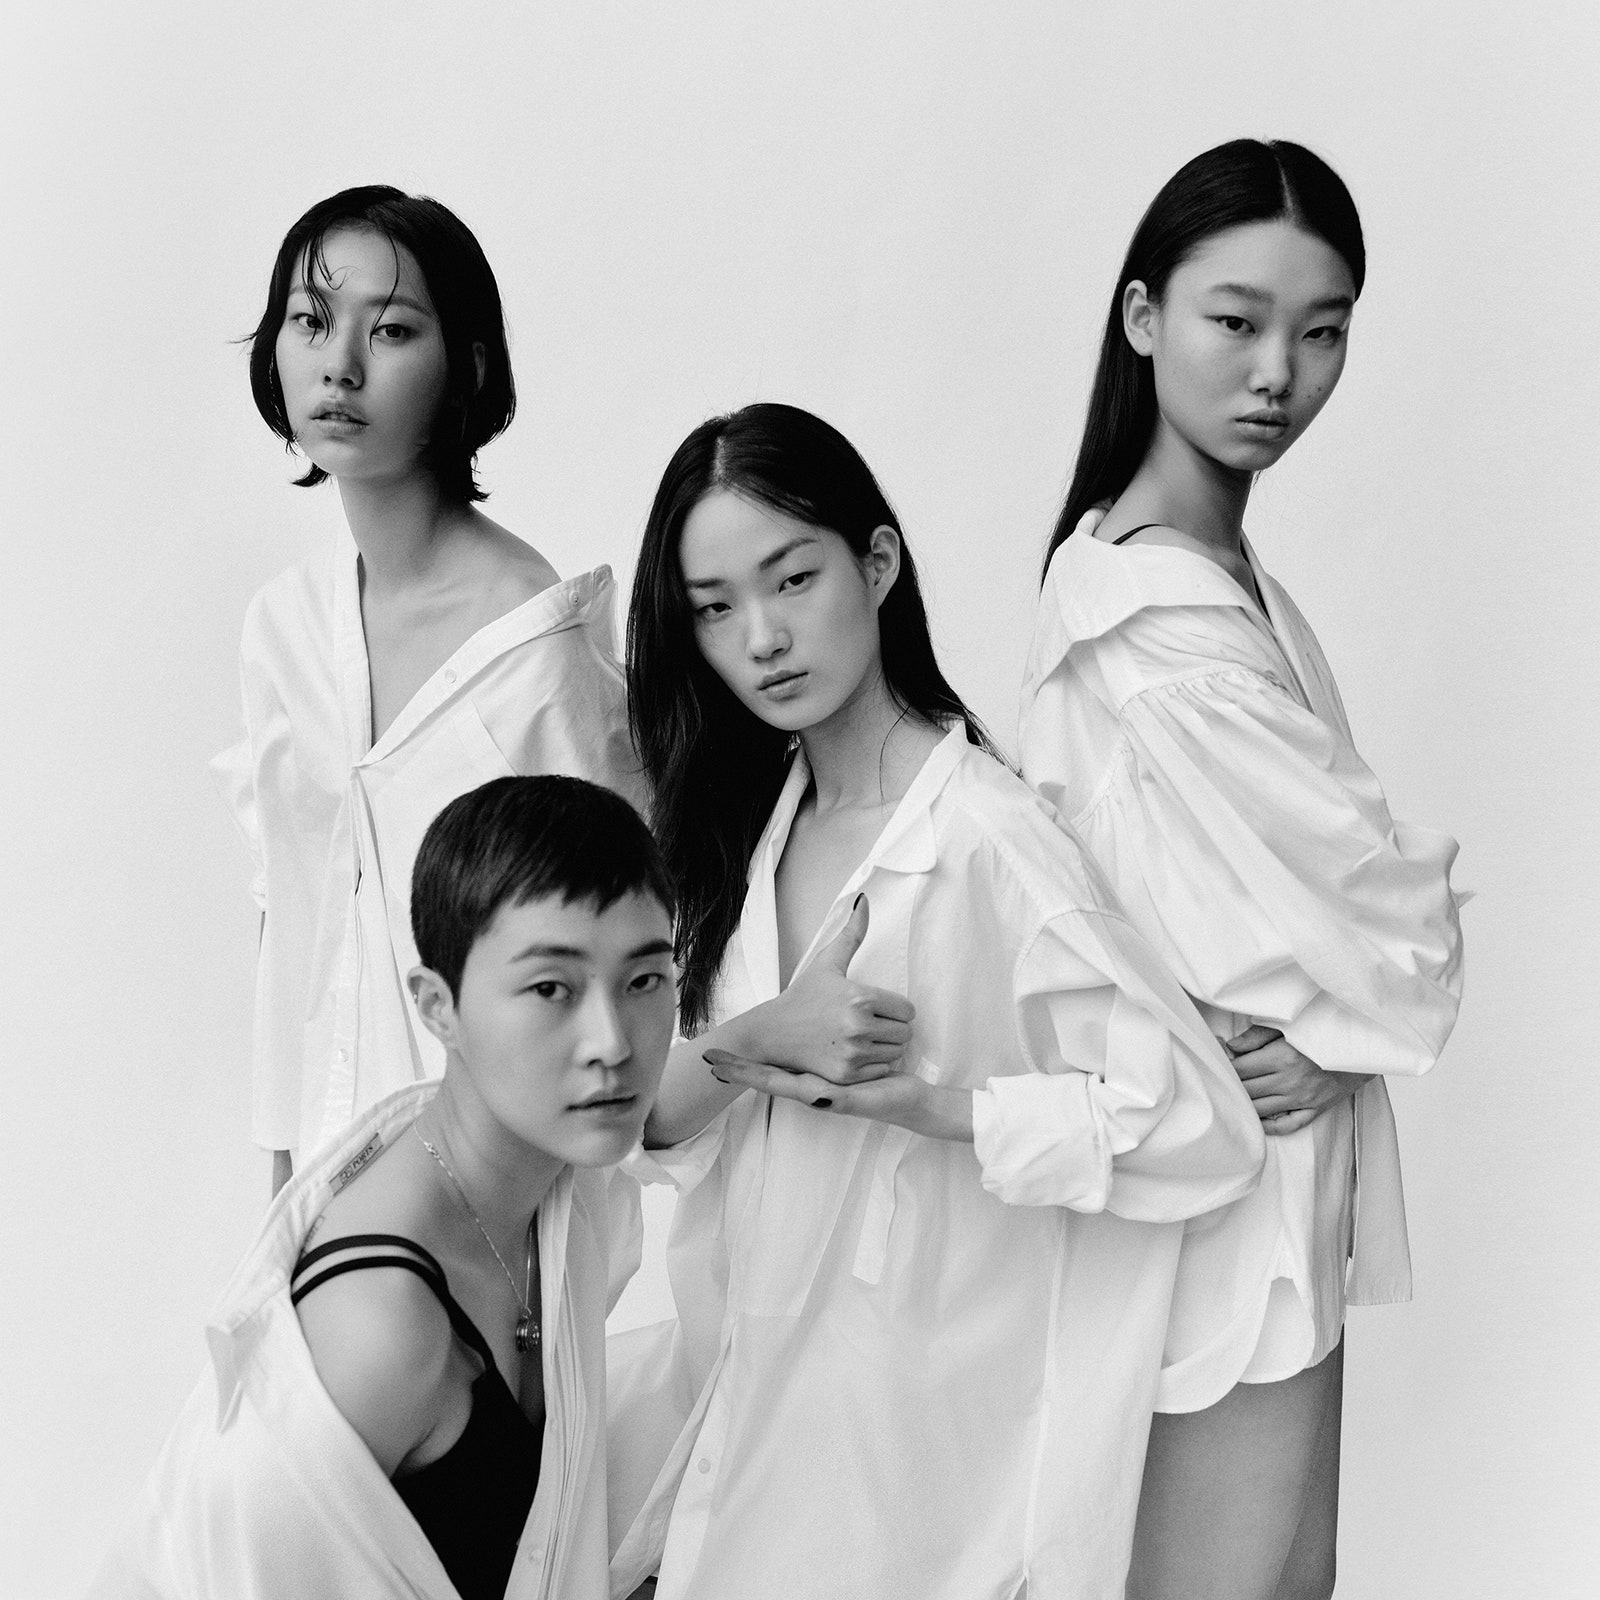 Vogue Корея